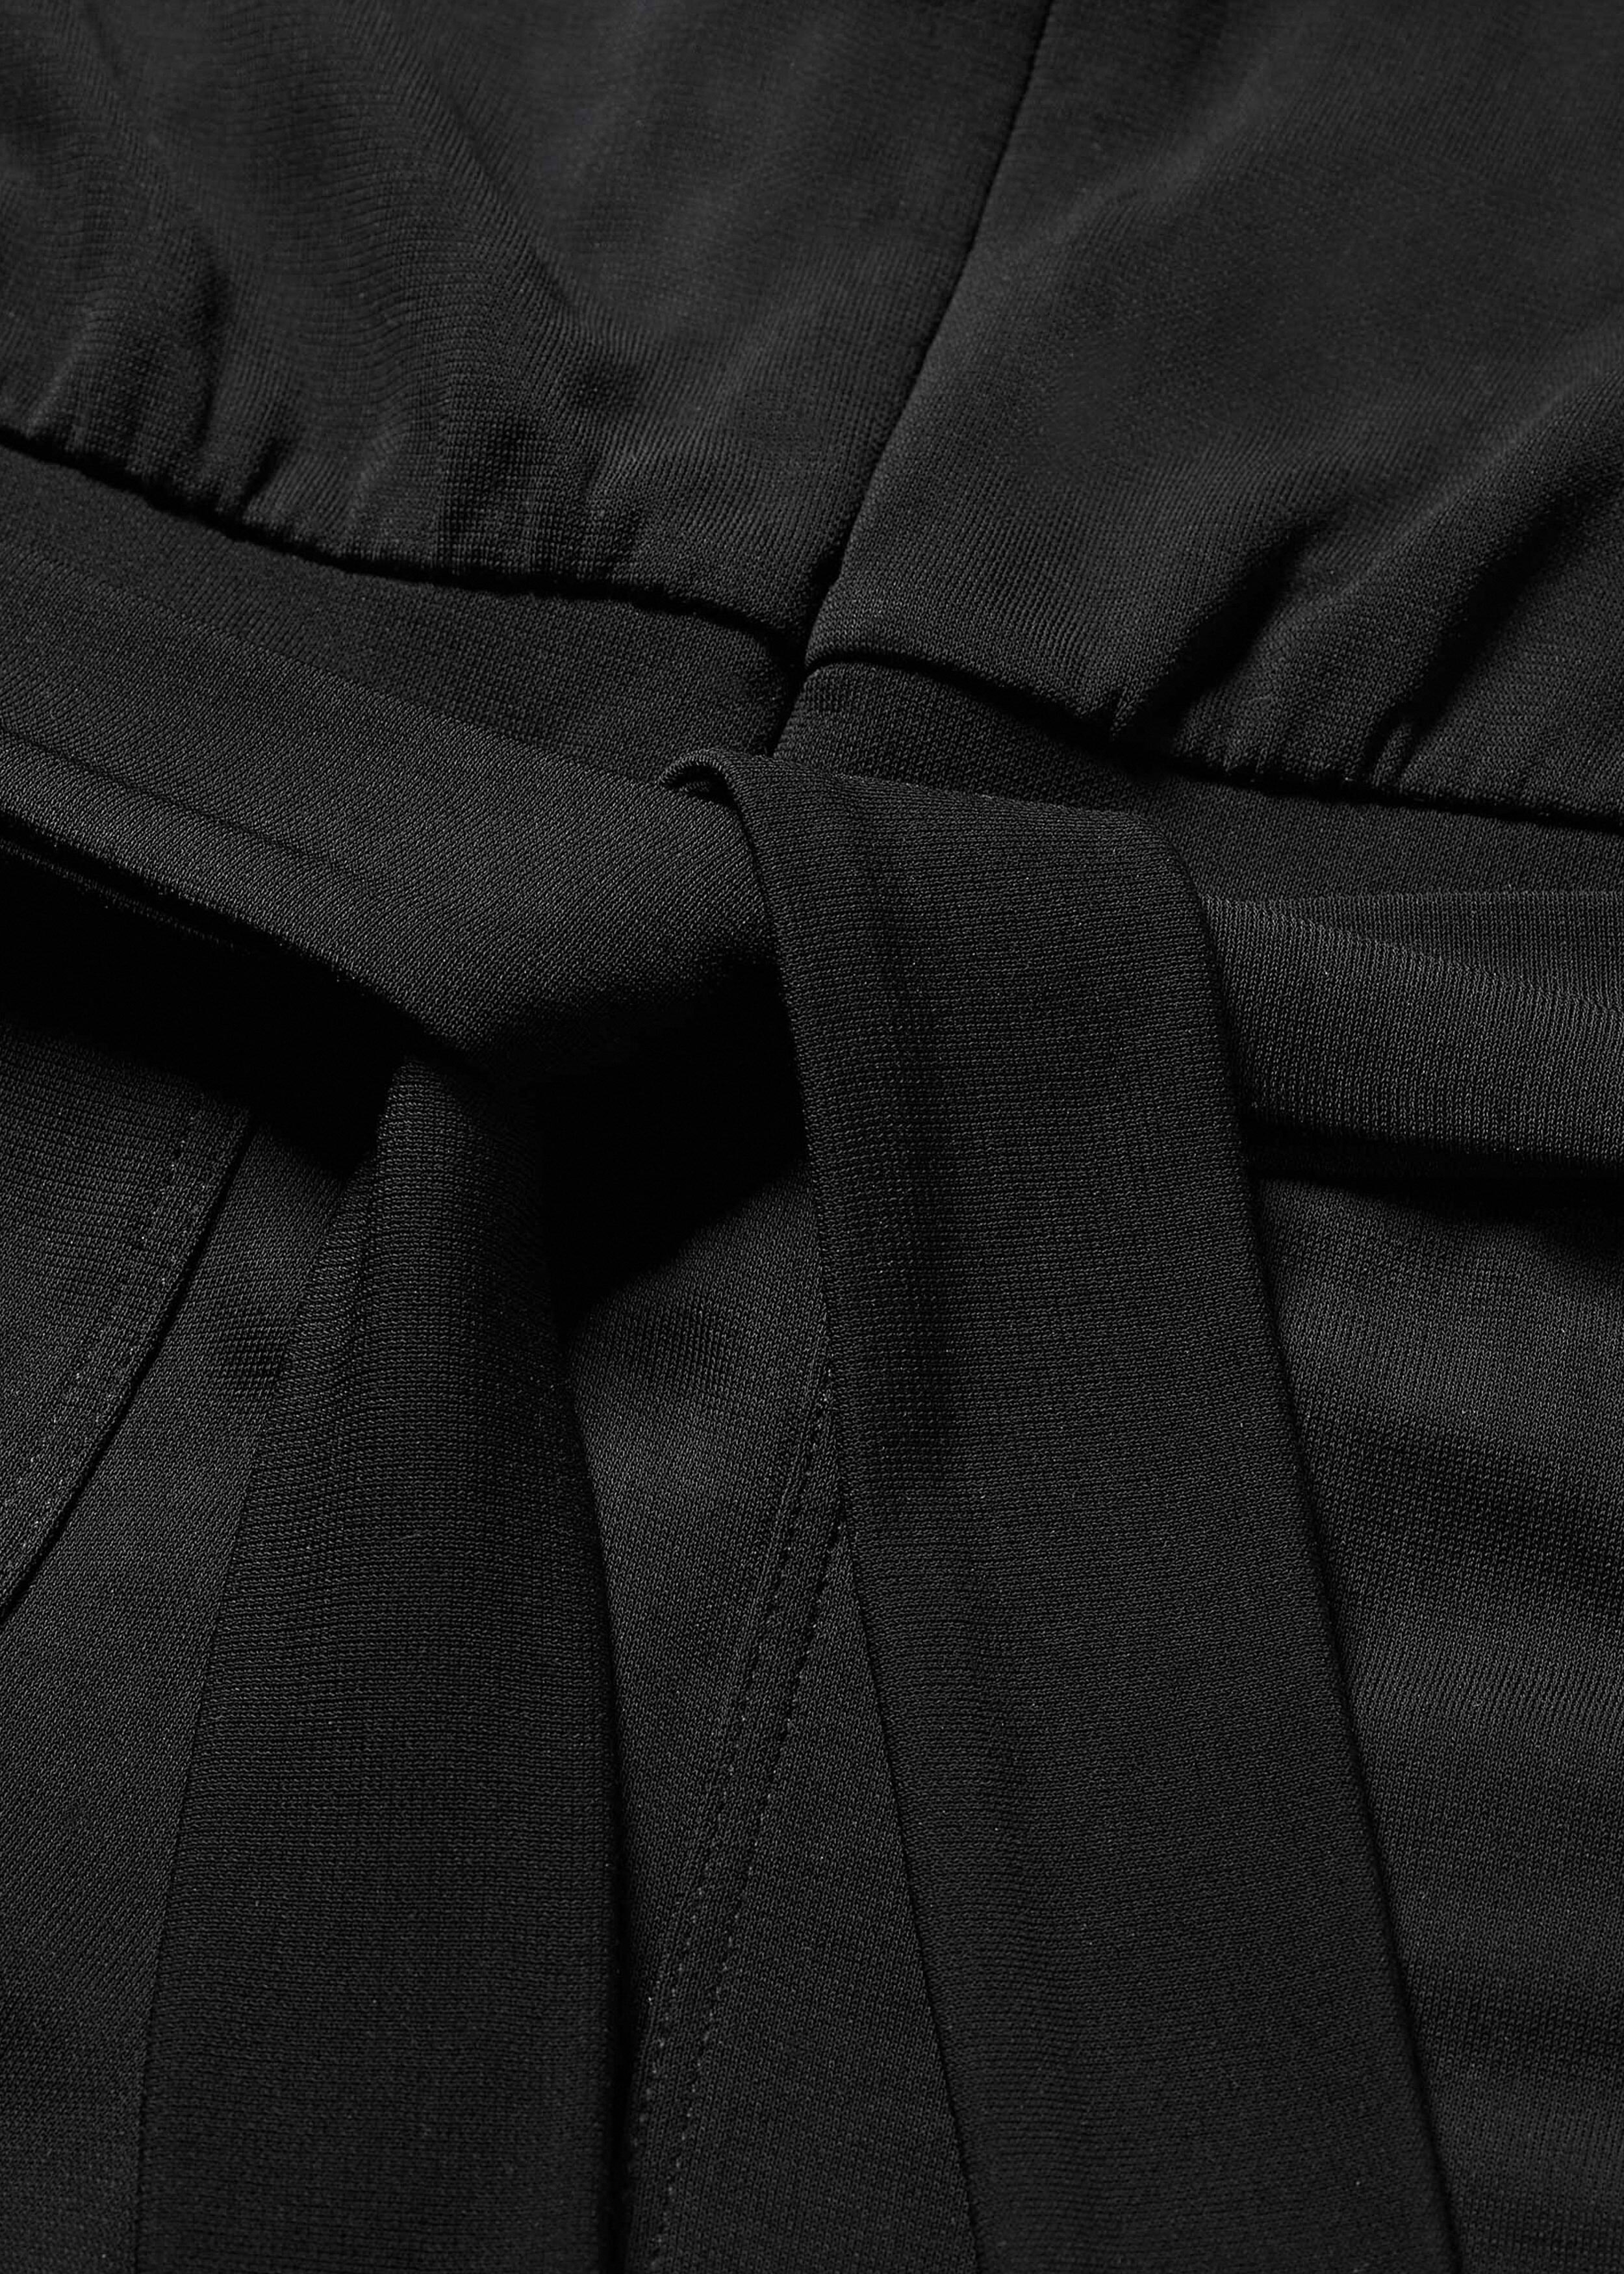 Balloon Sleeve Evening Jersey Jumpsuit Black